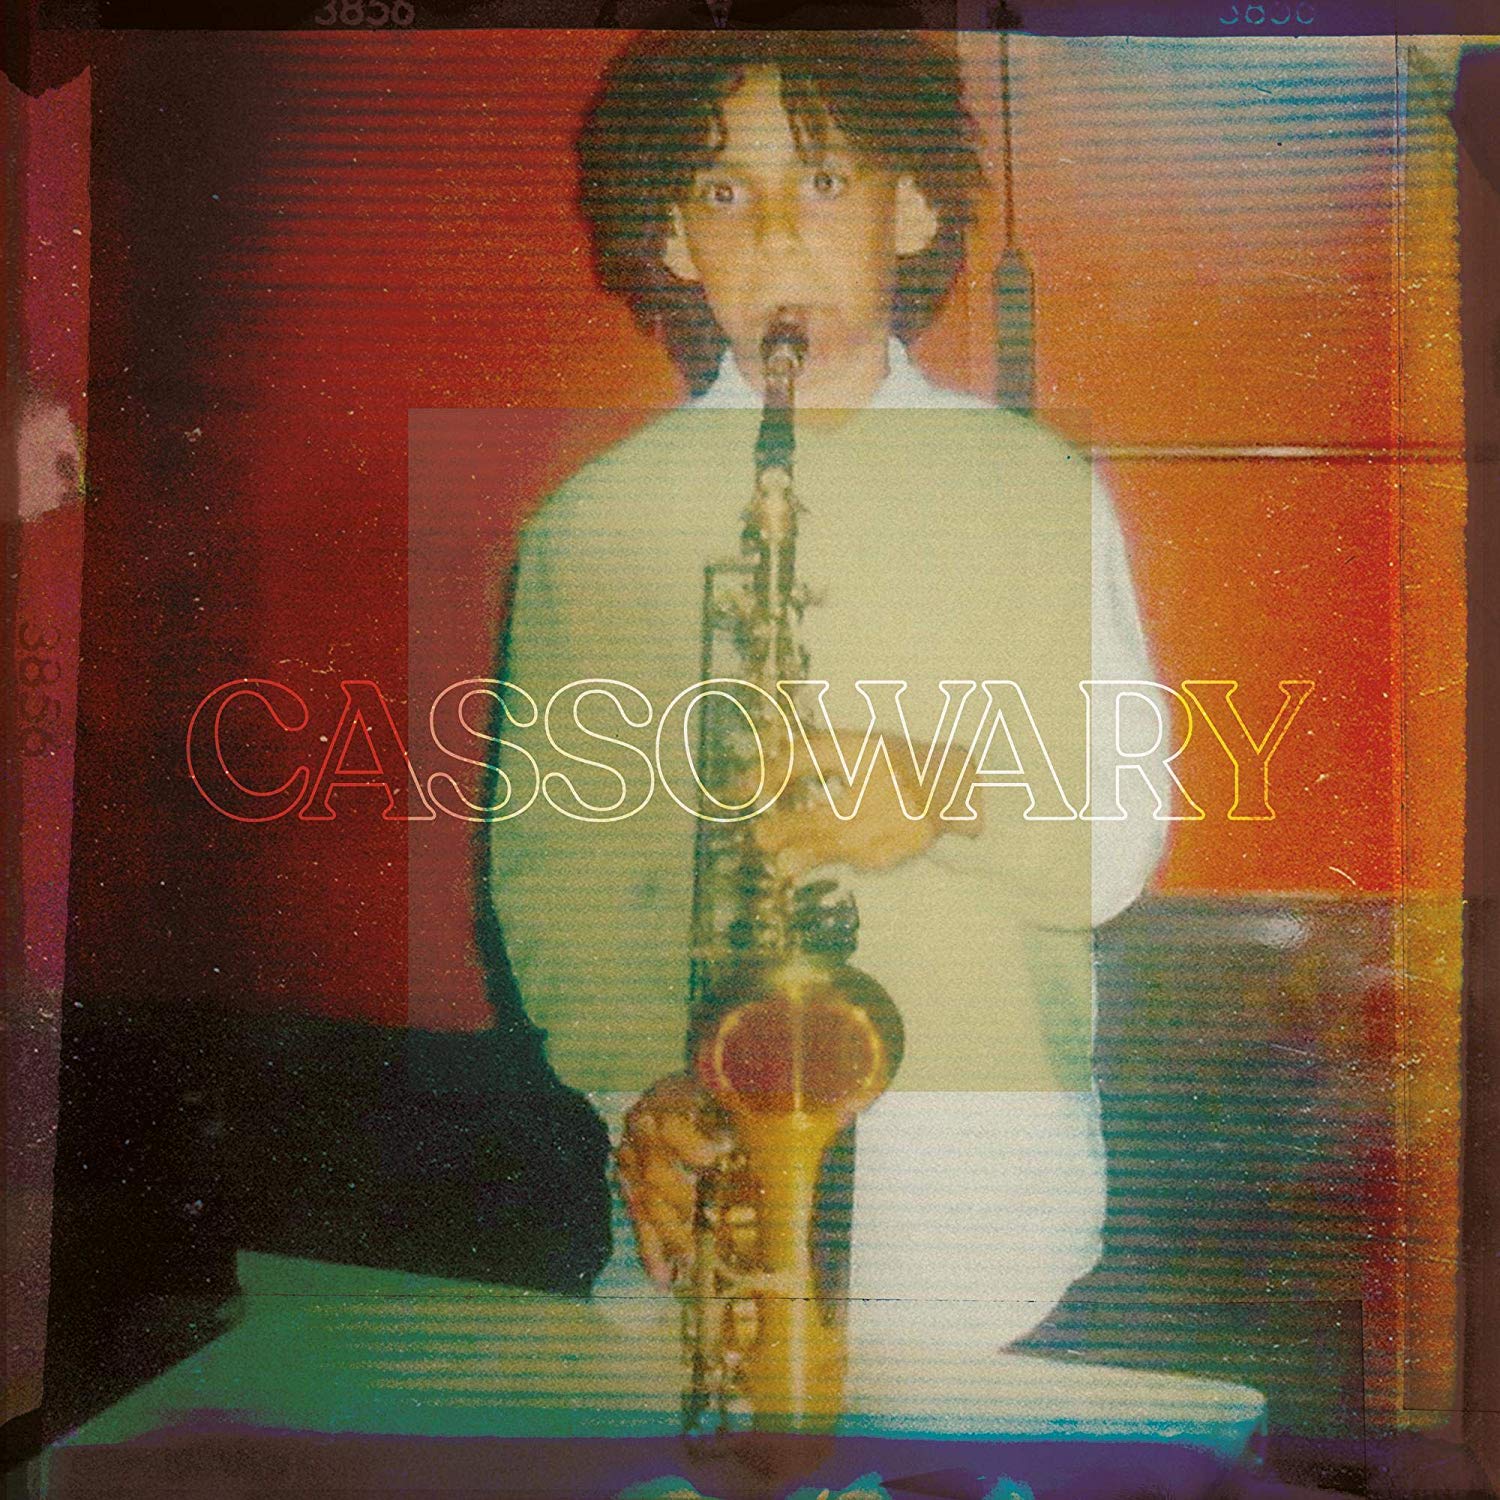 Vinile Cassowary - Cassowary NUOVO SIGILLATO, EDIZIONE DEL 24/04/2020 SUBITO DISPONIBILE